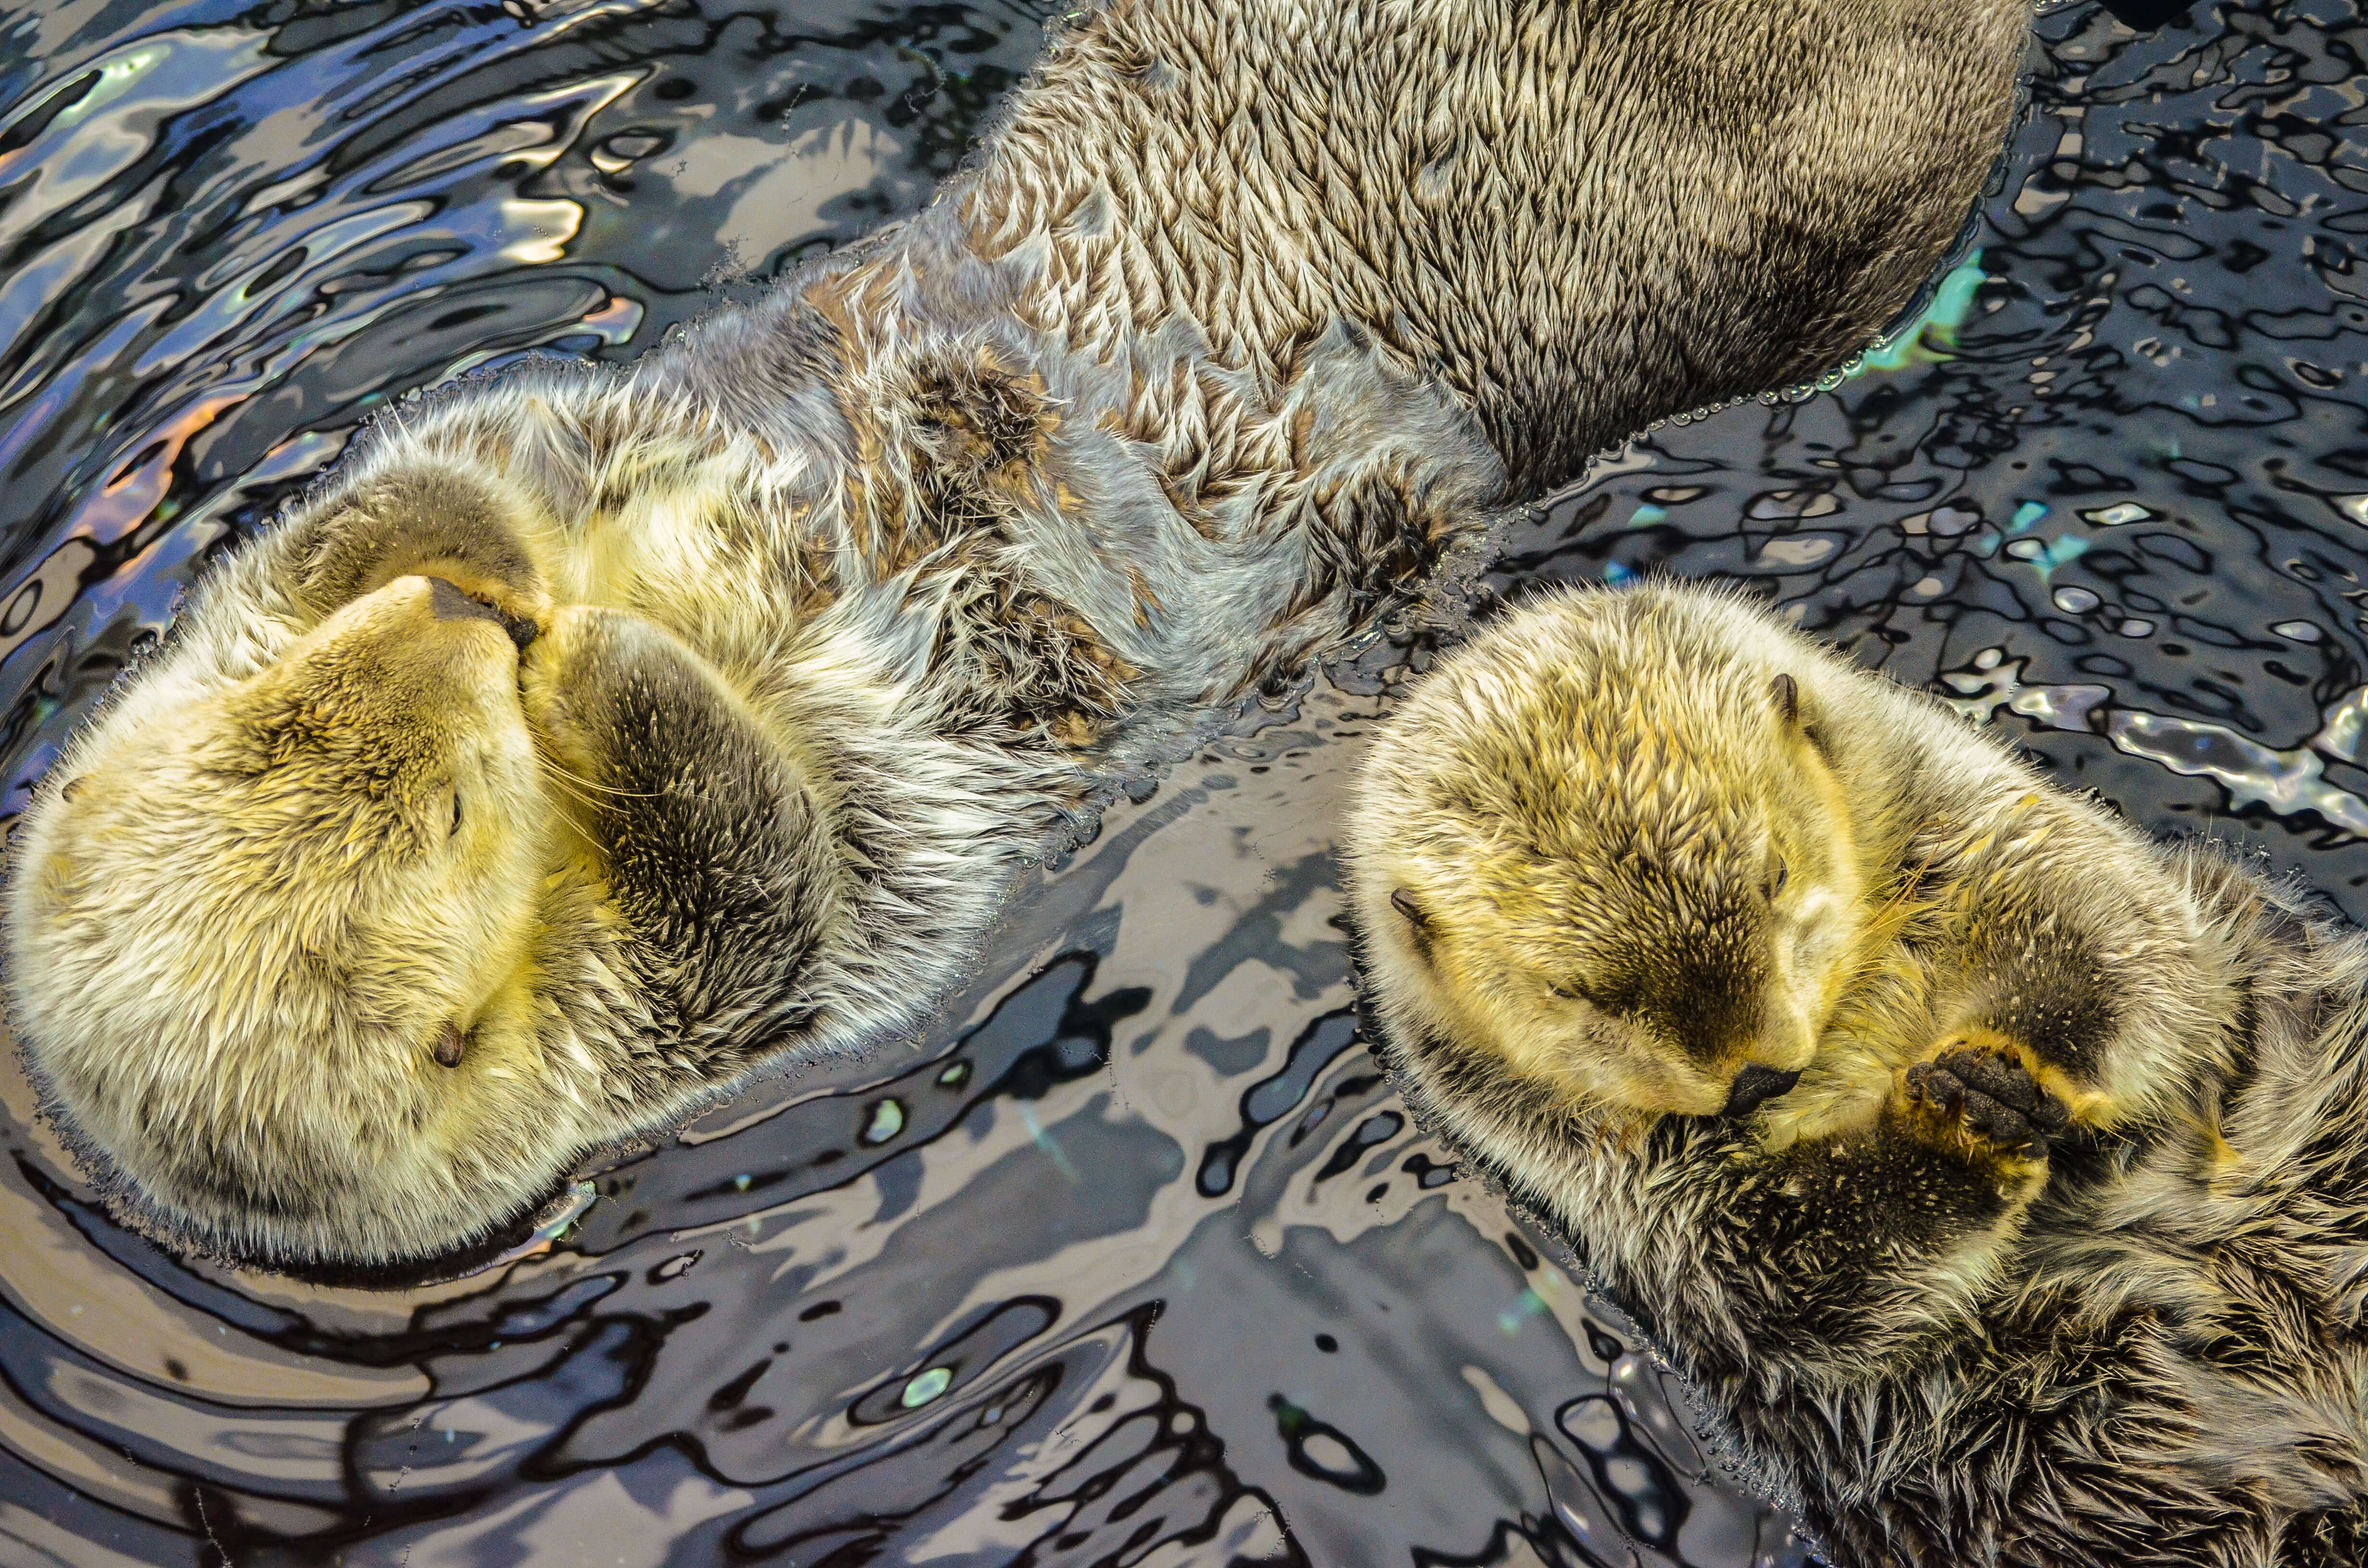 A pair of sea otters at Lisbon Aquarium in Lisbon, Portugal